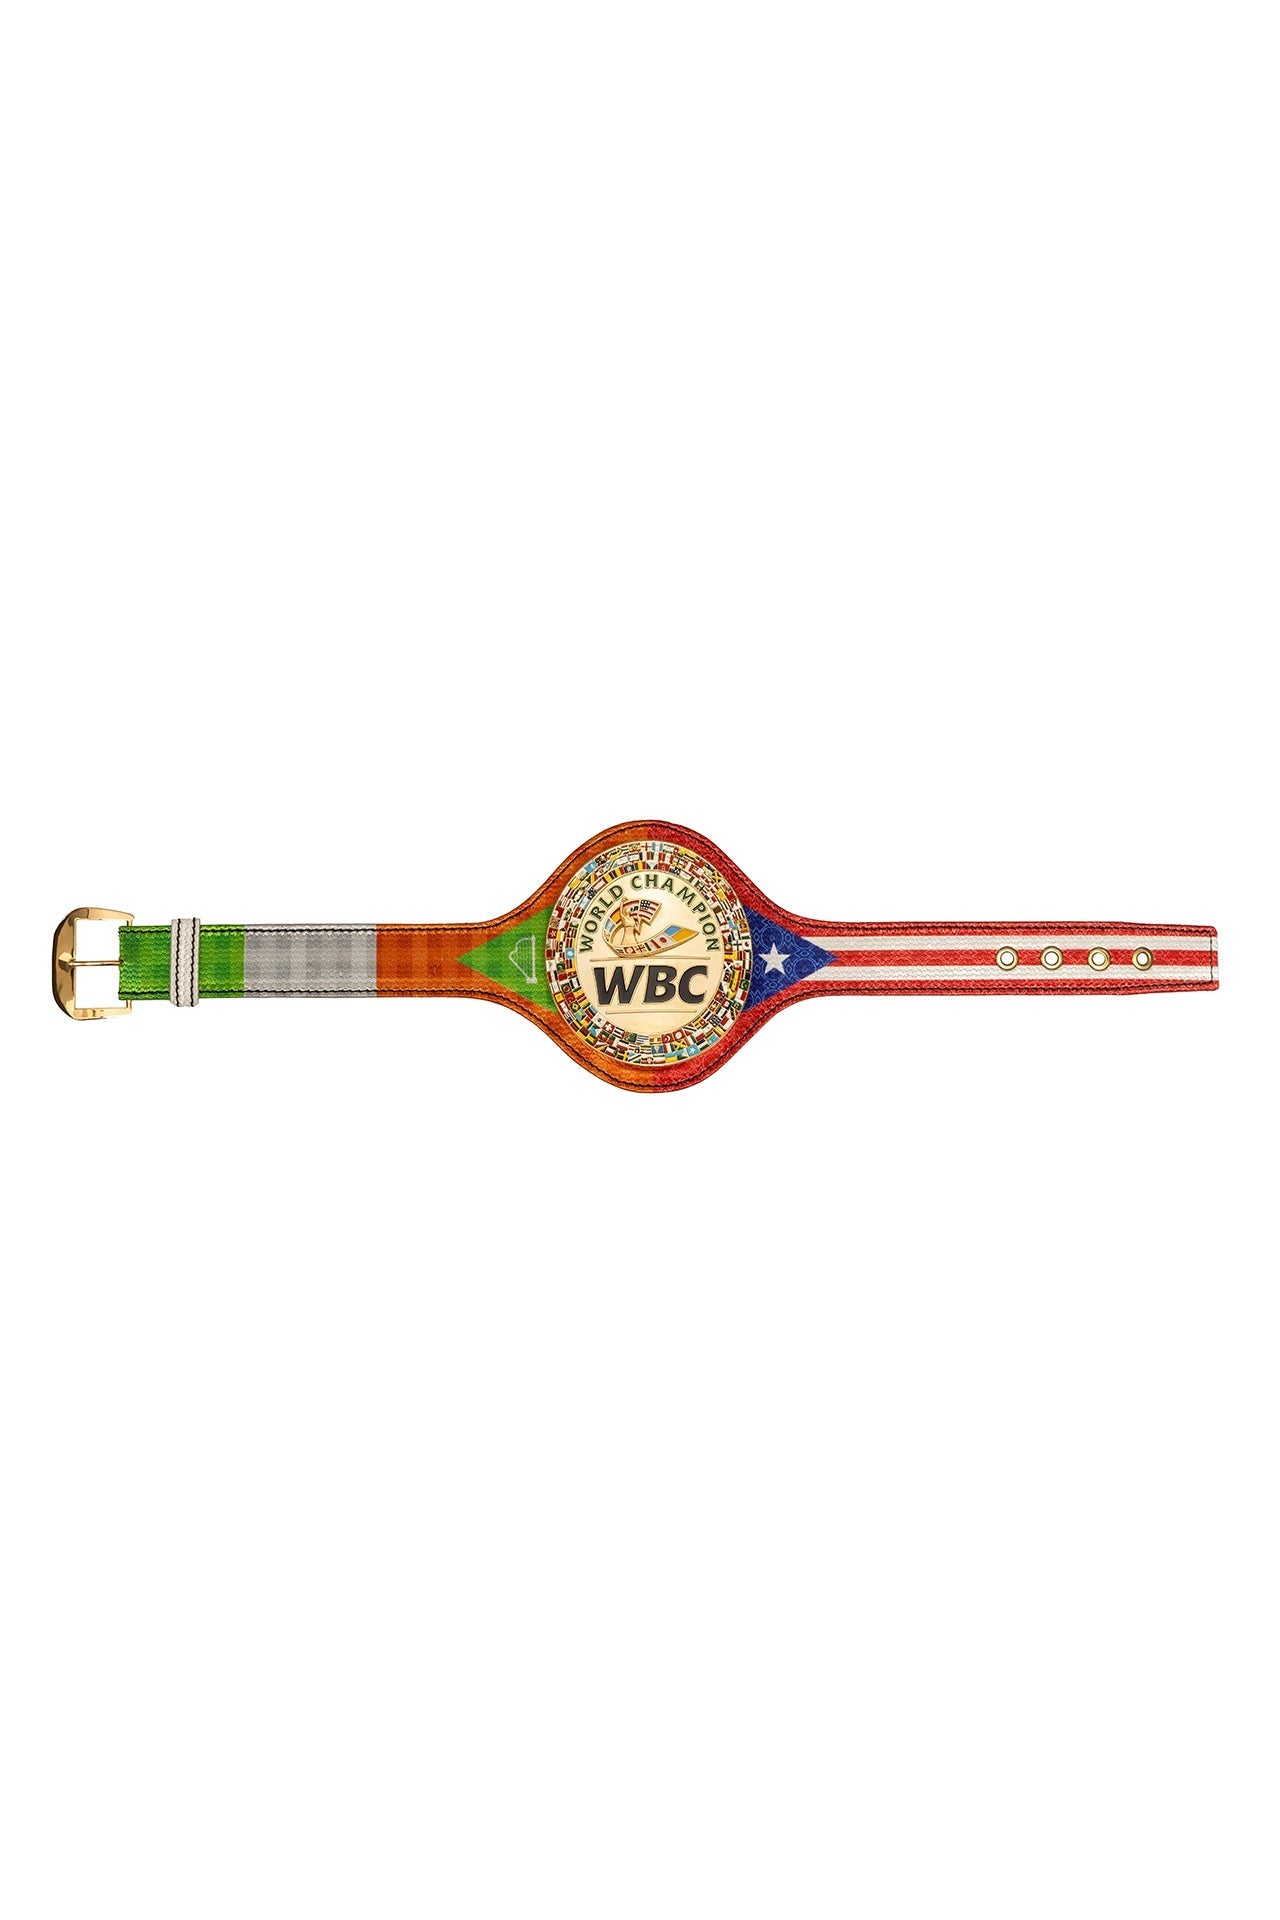 WBC Store WBC Ireland and Costa Rica Mini Belt